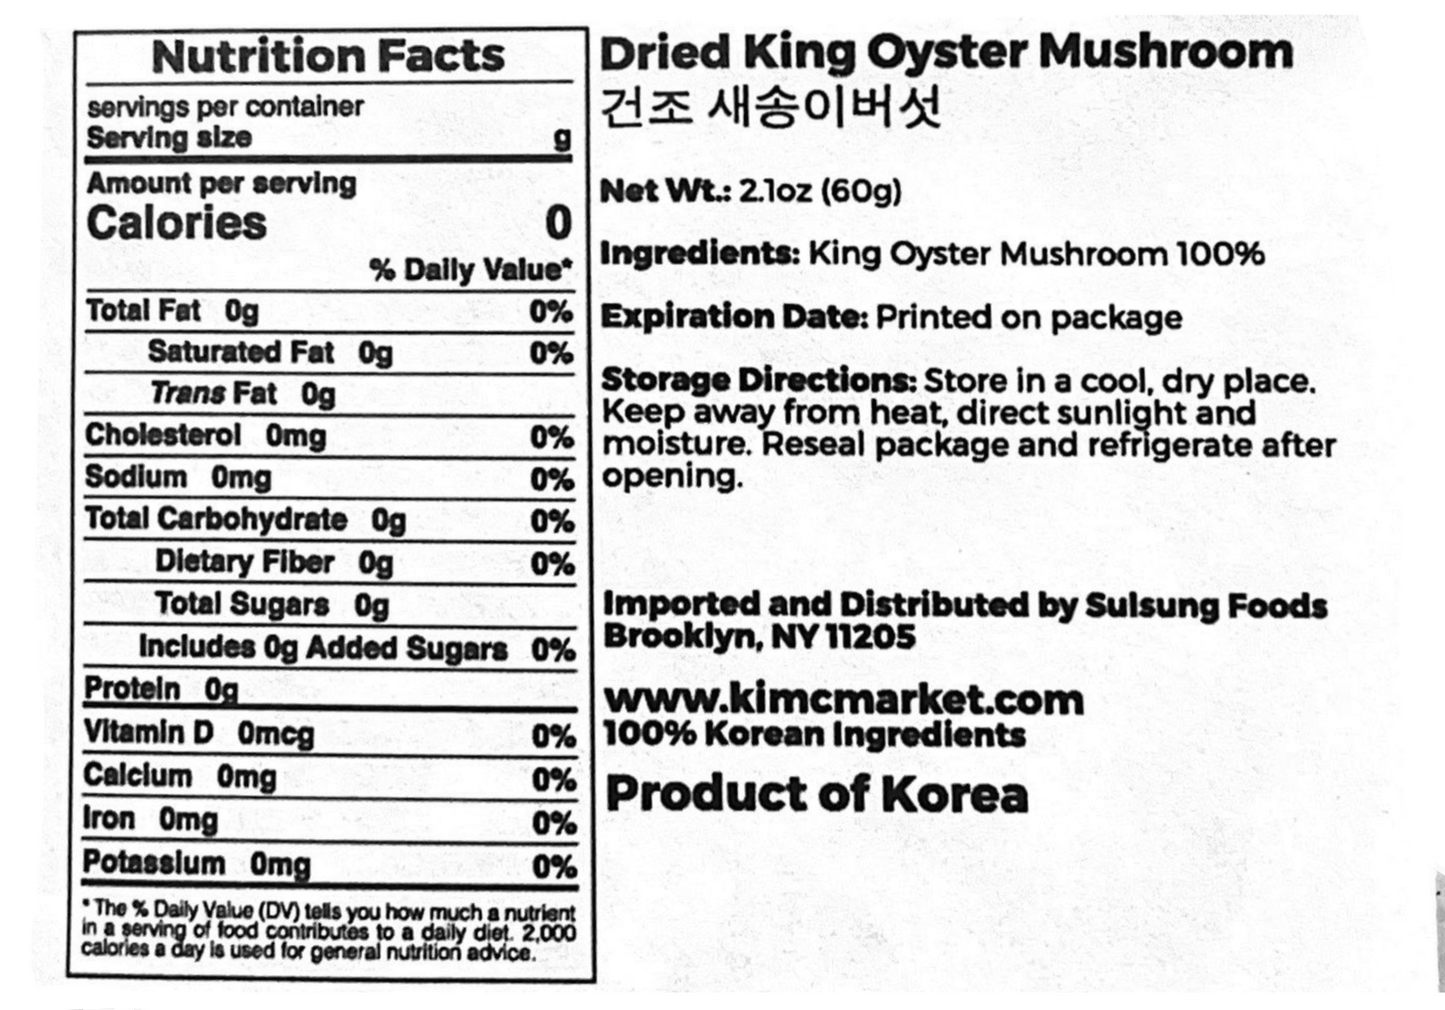 Dried King Oyster Mushroom - Kim'C Market